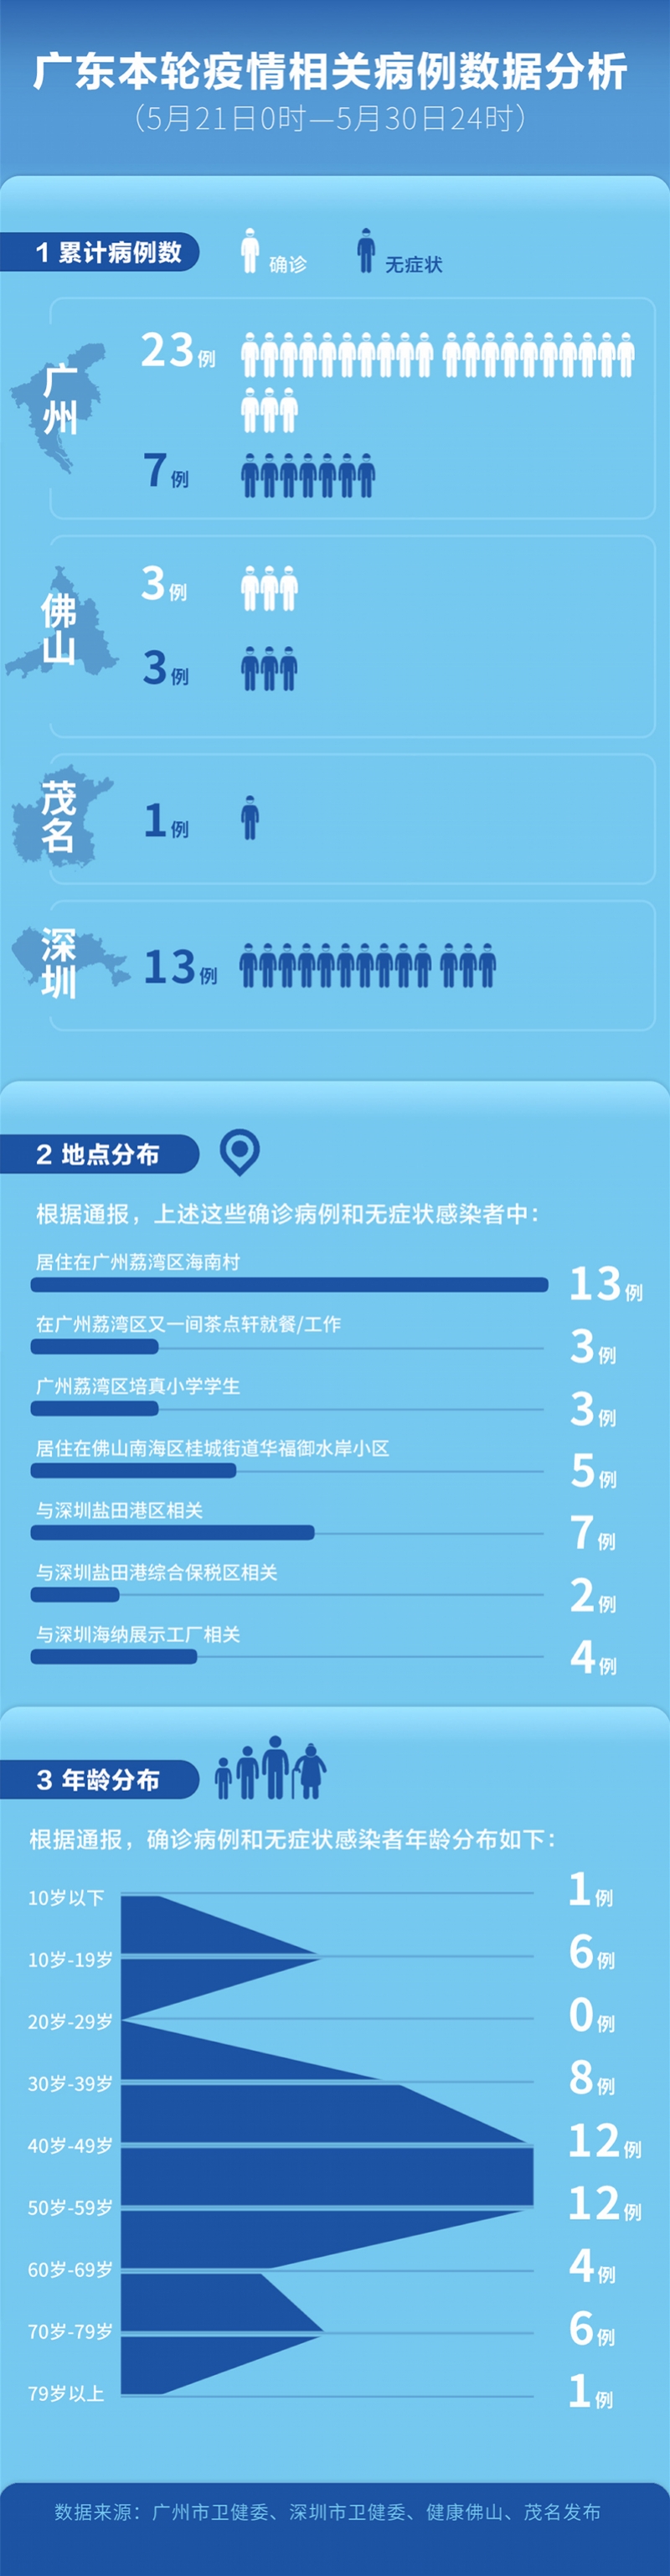 广东本轮疫情数据广州荔湾区海南村13人感染